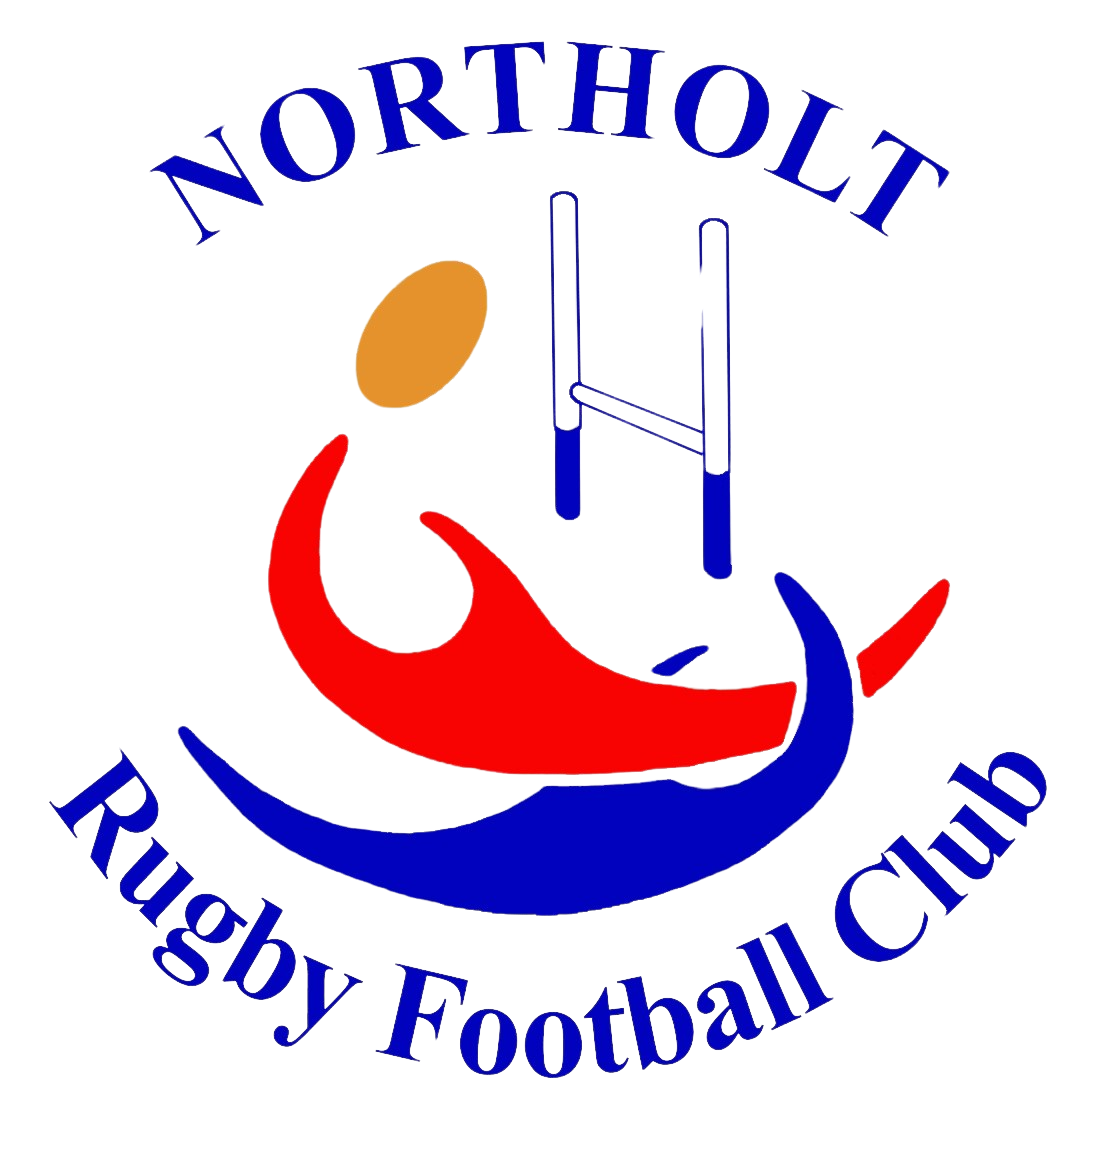 Northolt RFC